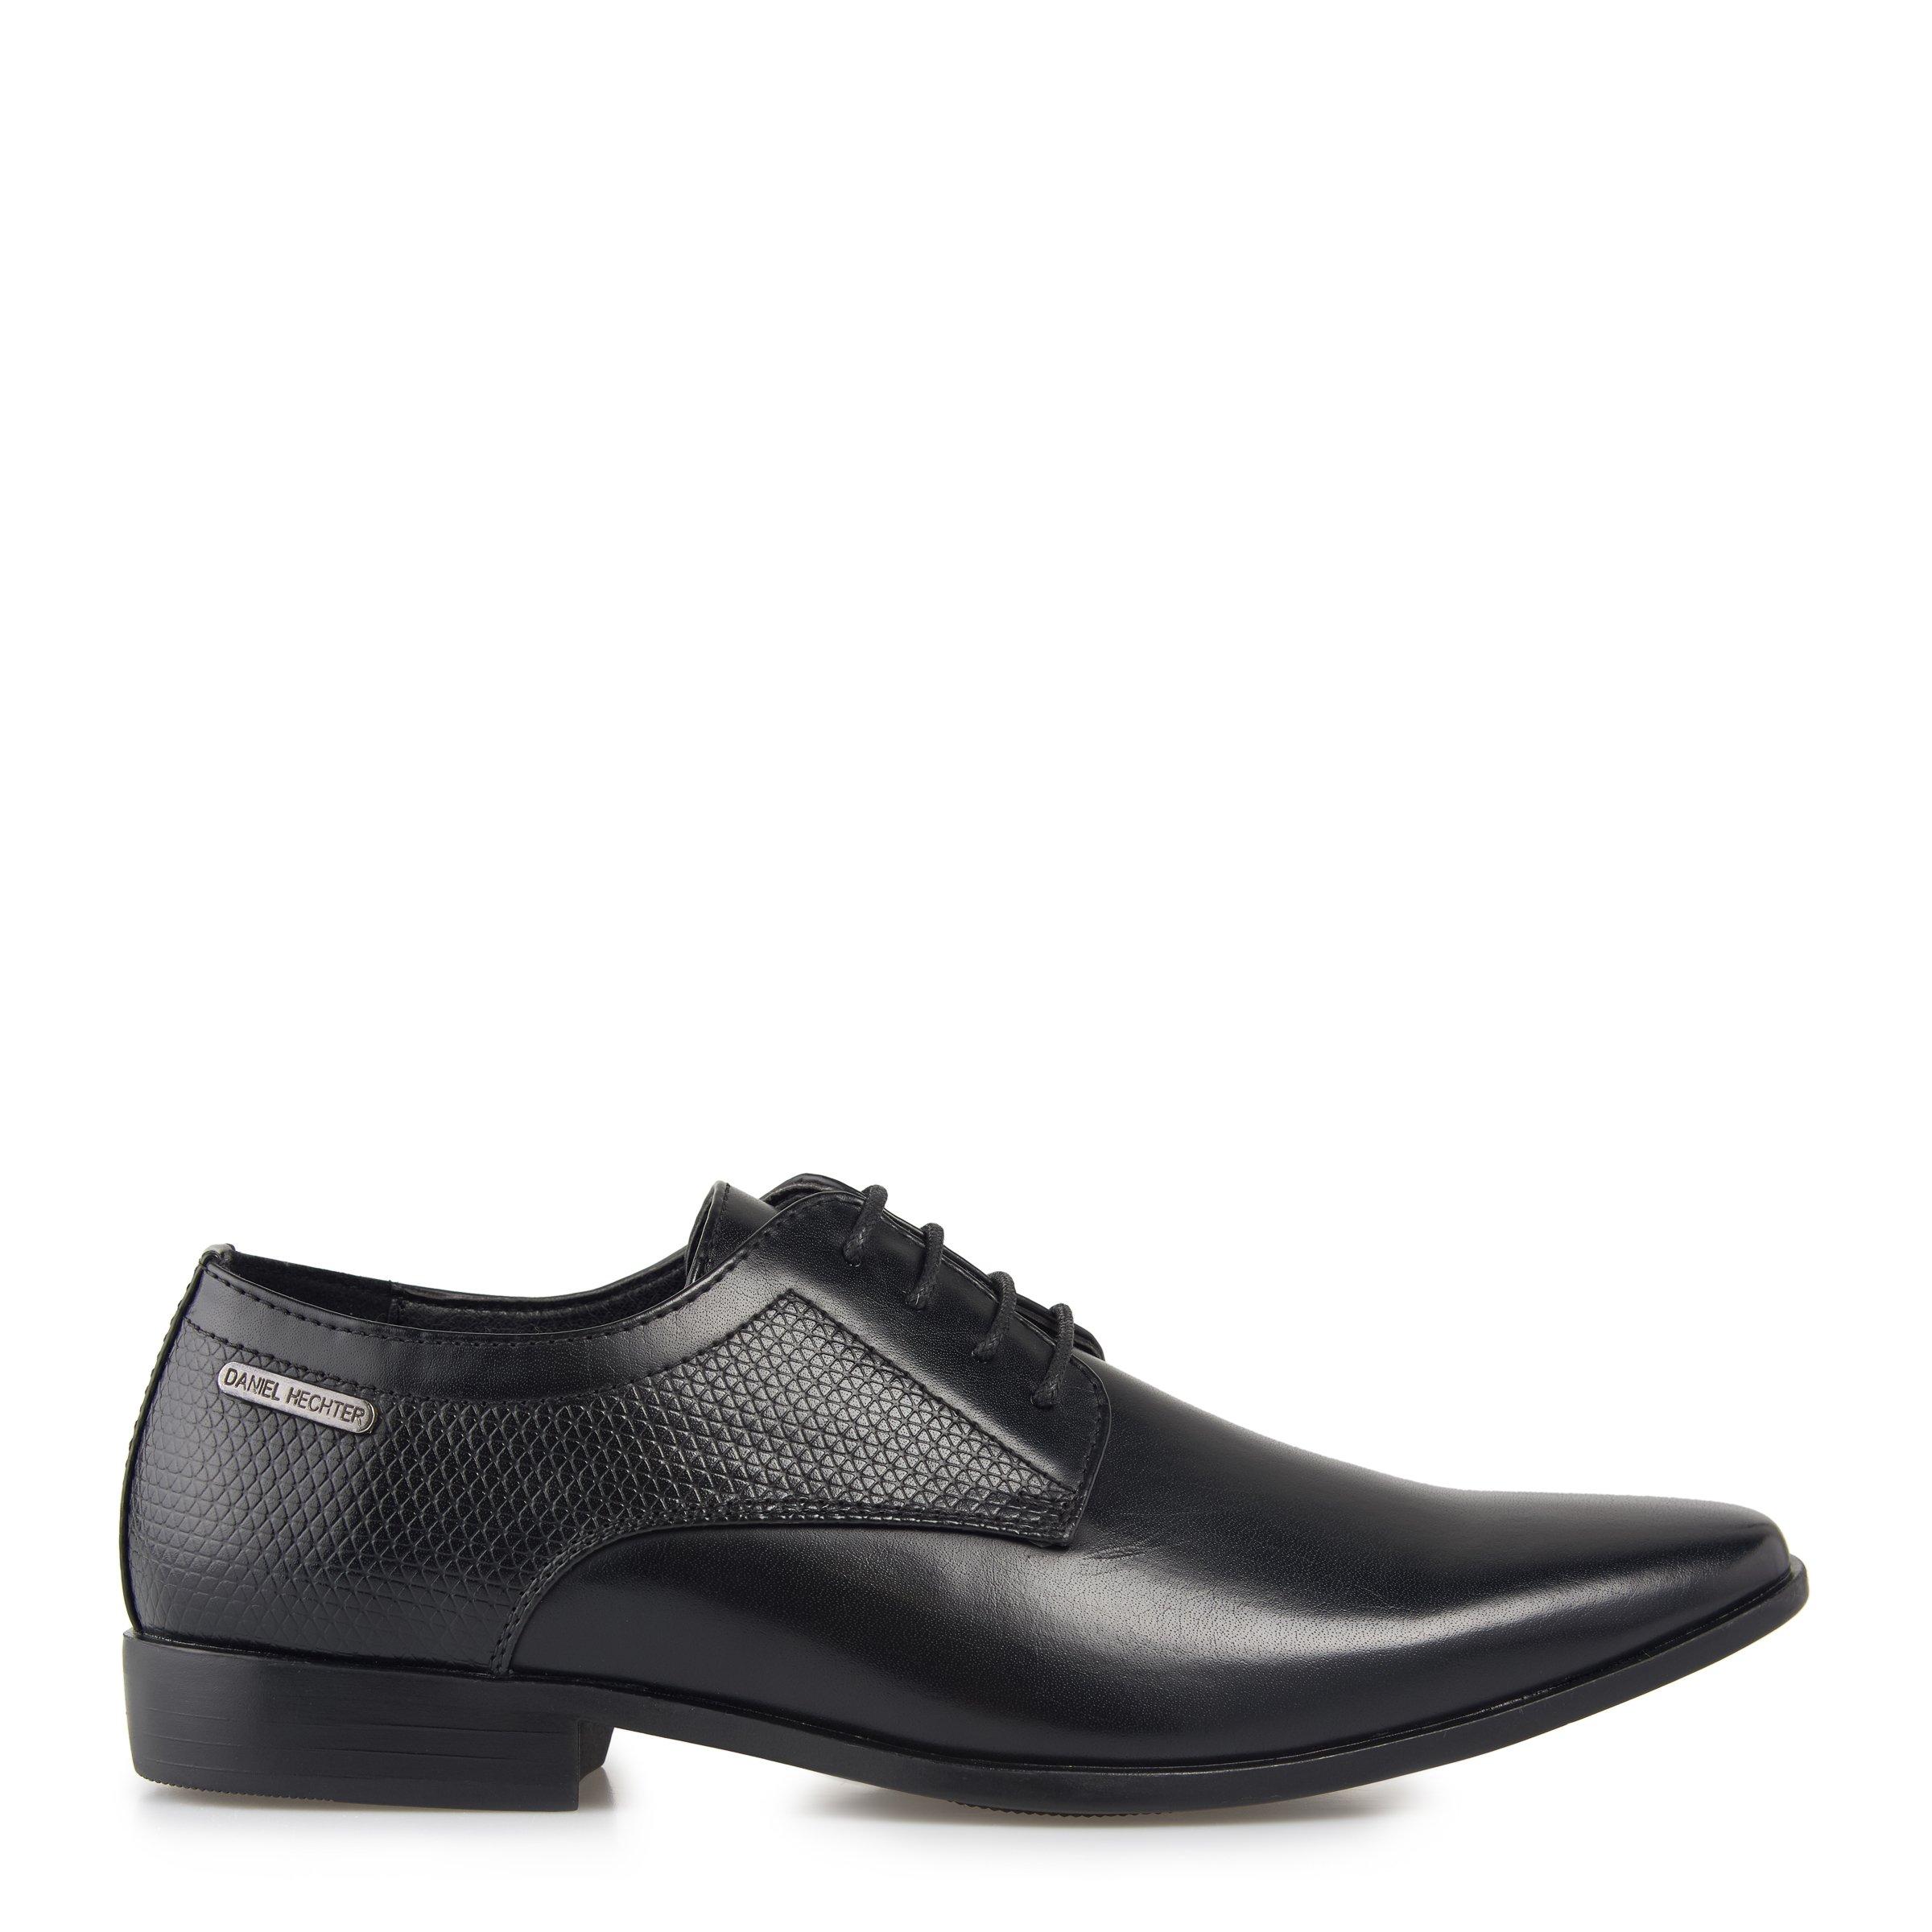 Truworths Black Lace Up Formal Shoe